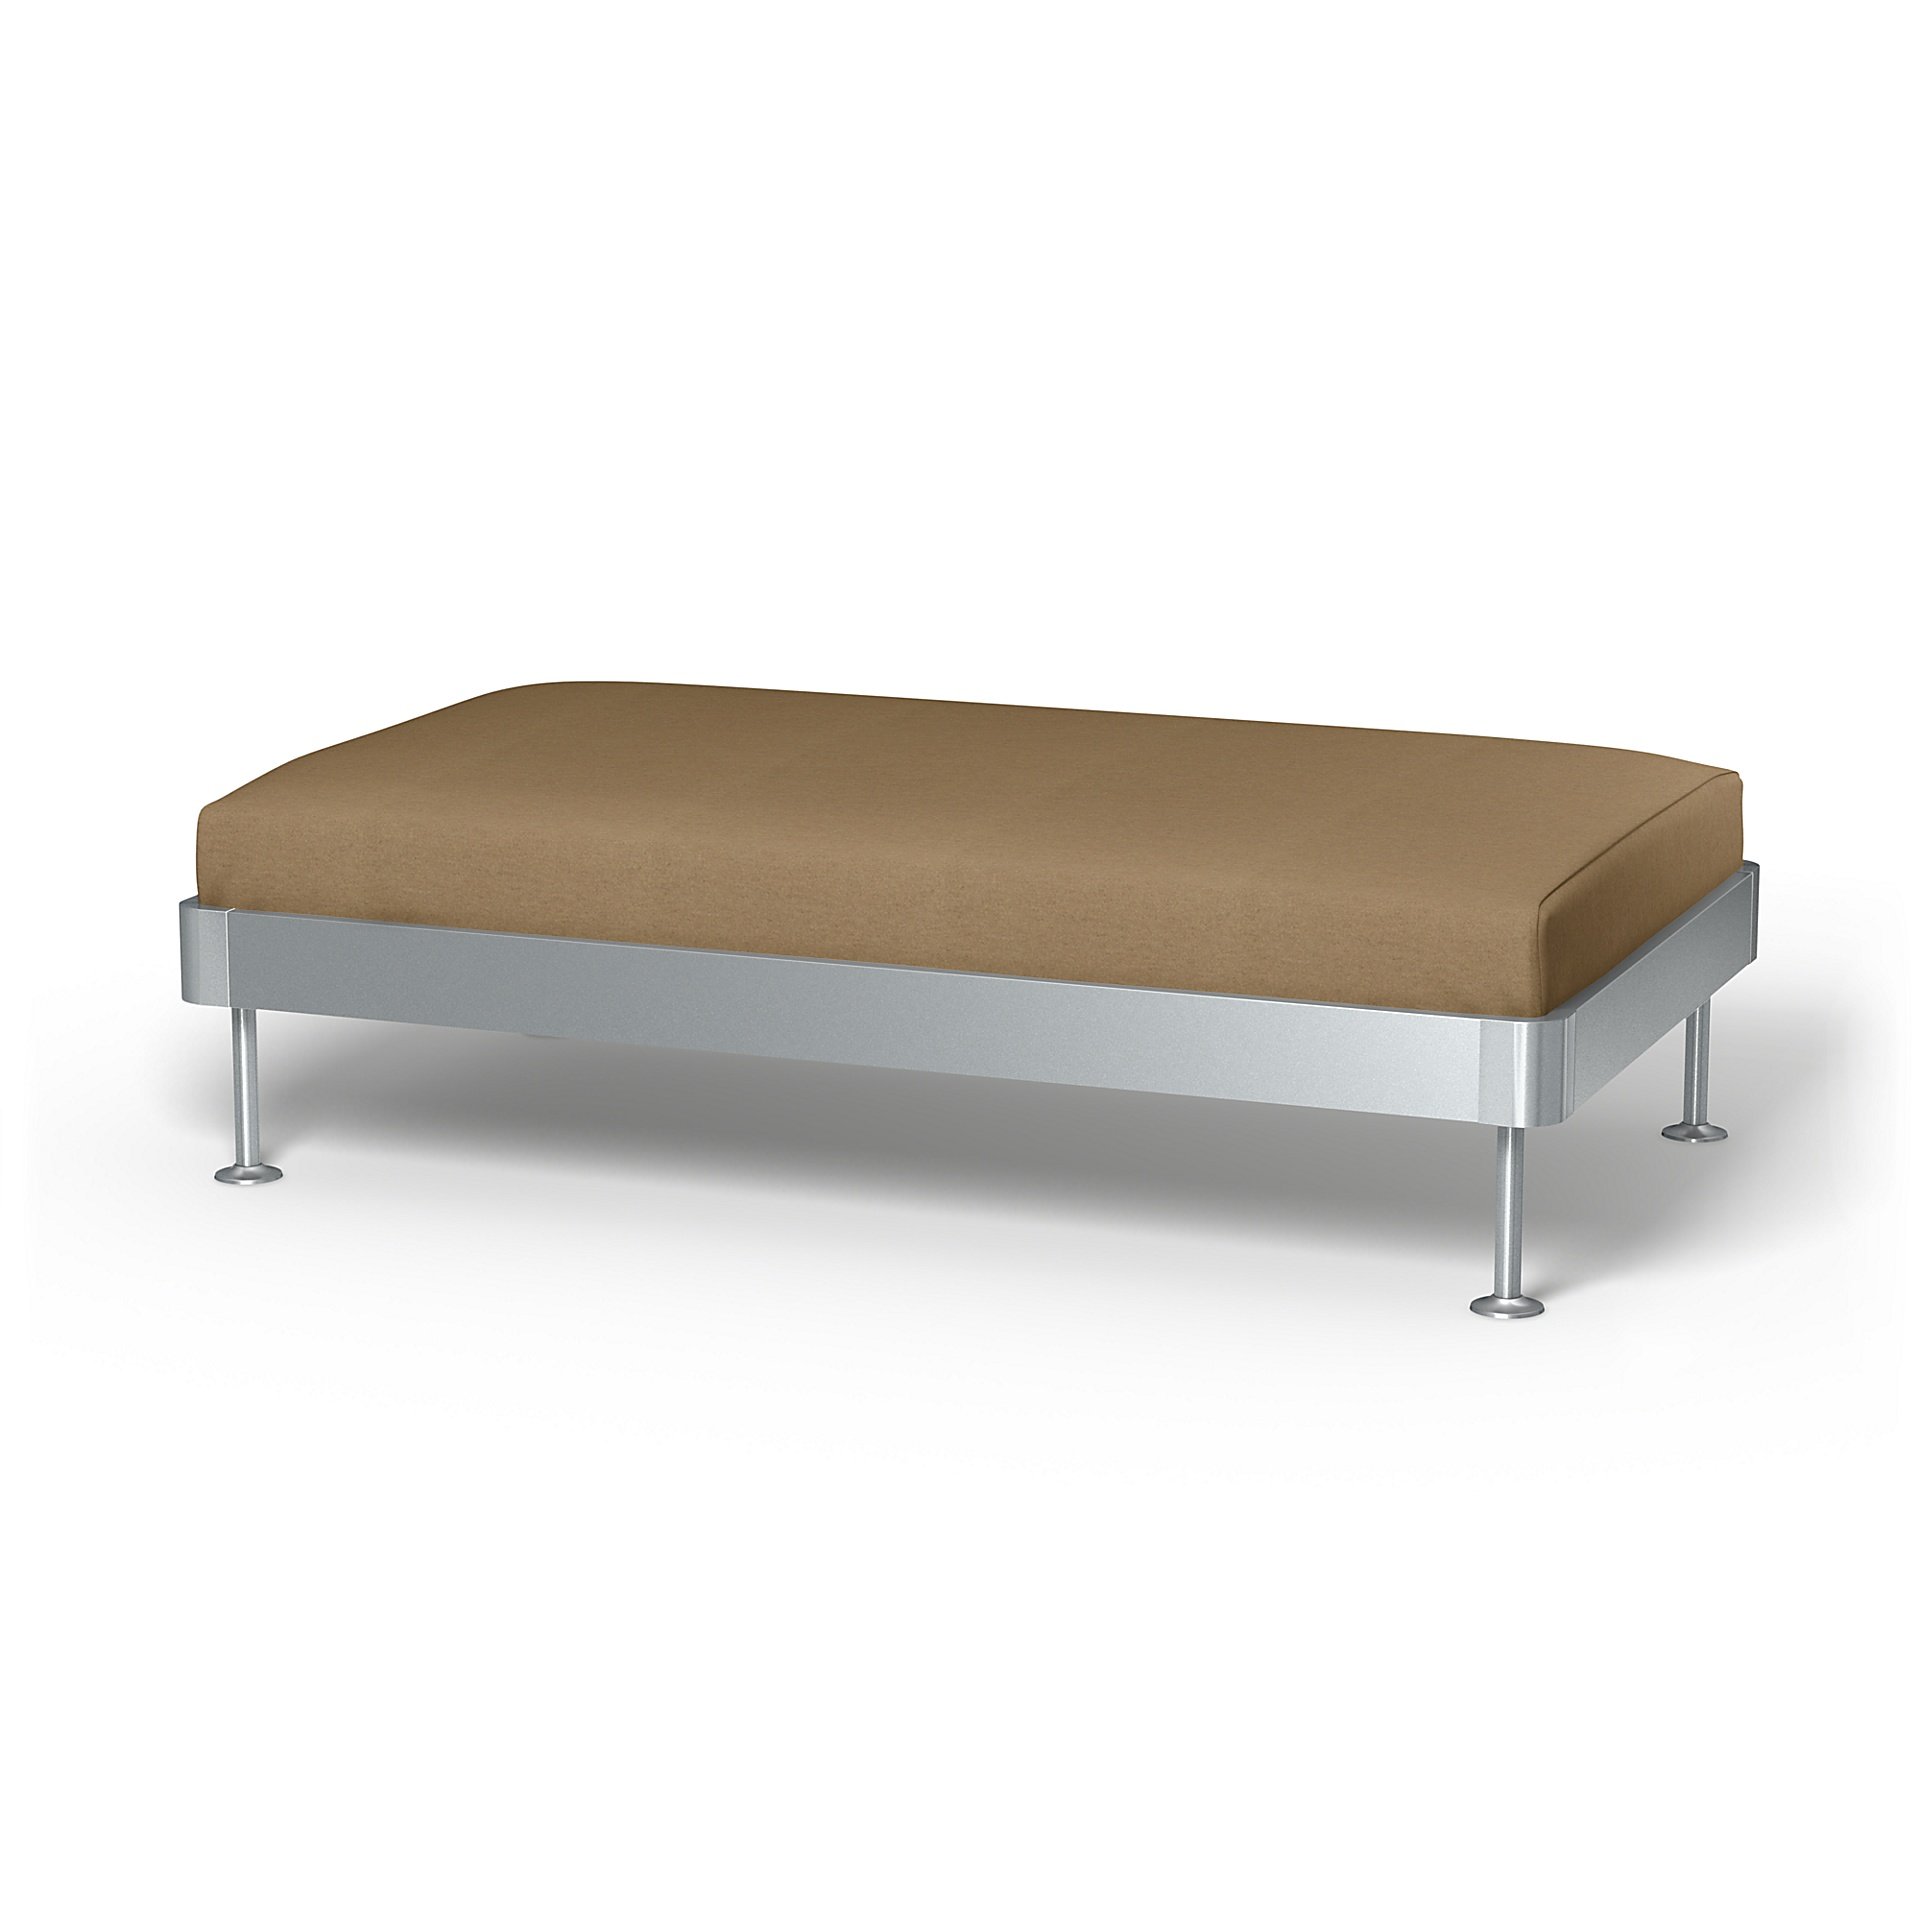 IKEA - Delaktig 2 Seat Platform Cover, Sand, Wool - Bemz